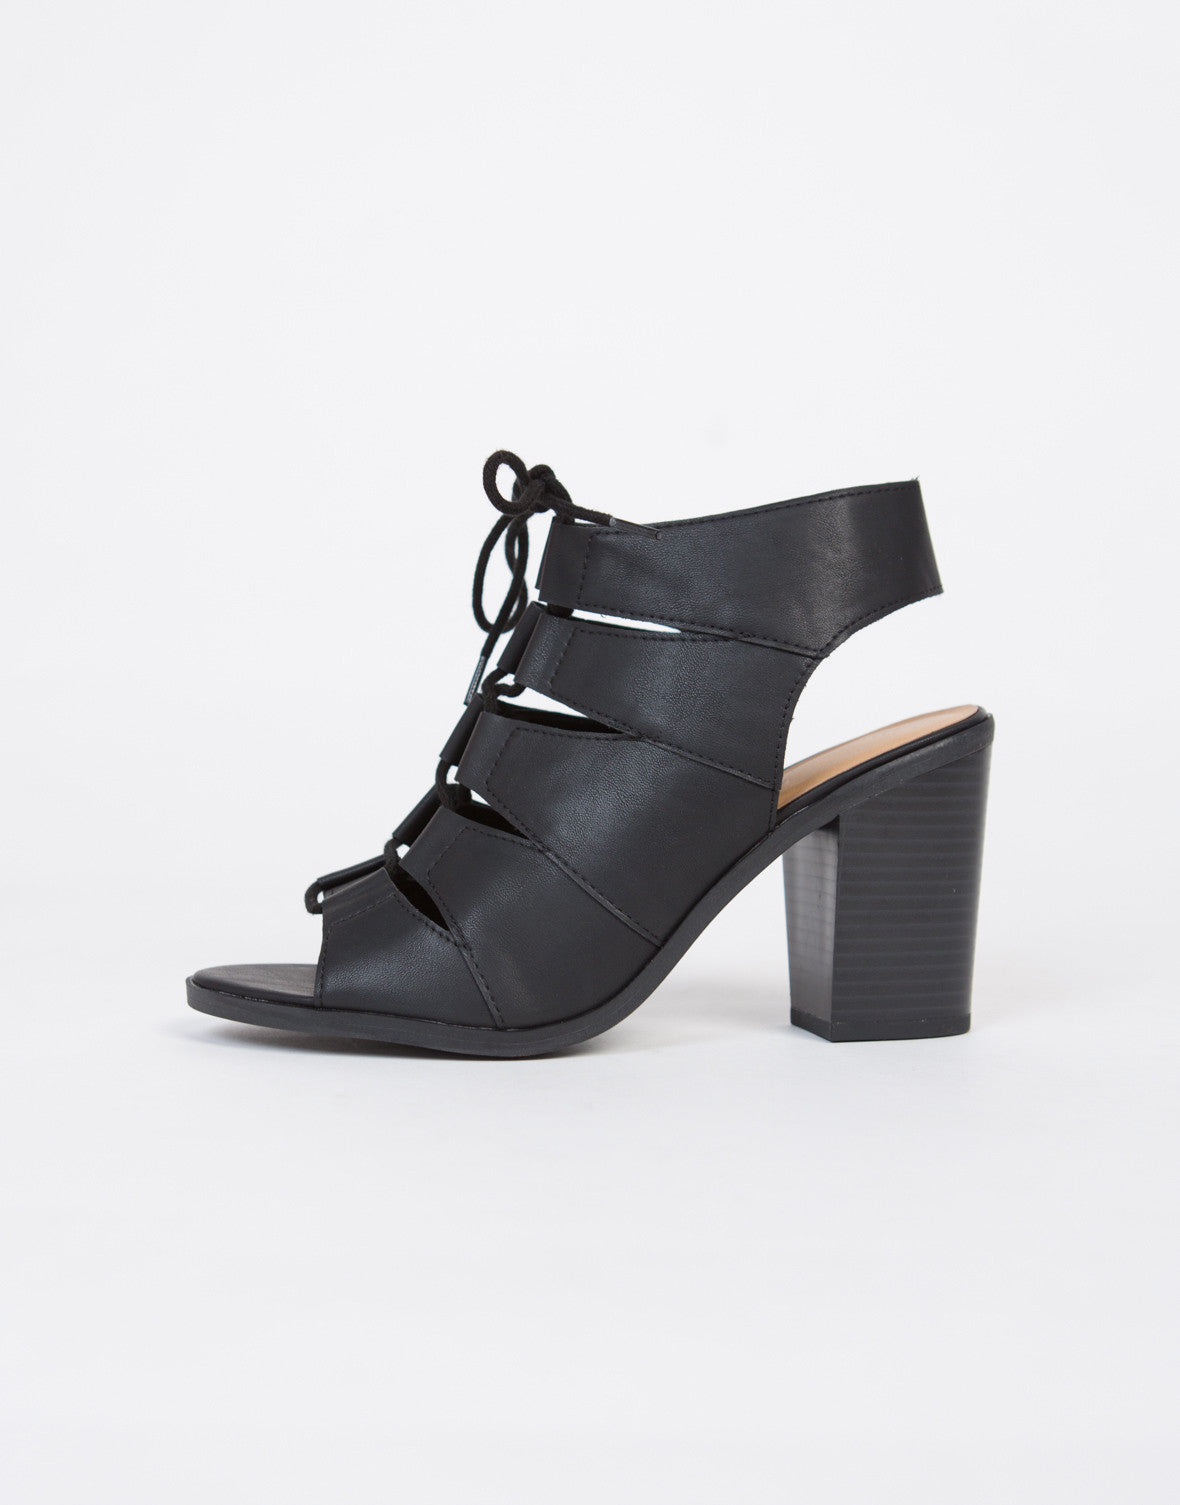 Open Toe Block Heel Sandals - Black Leather Sandals - Peep Toe Heels ...